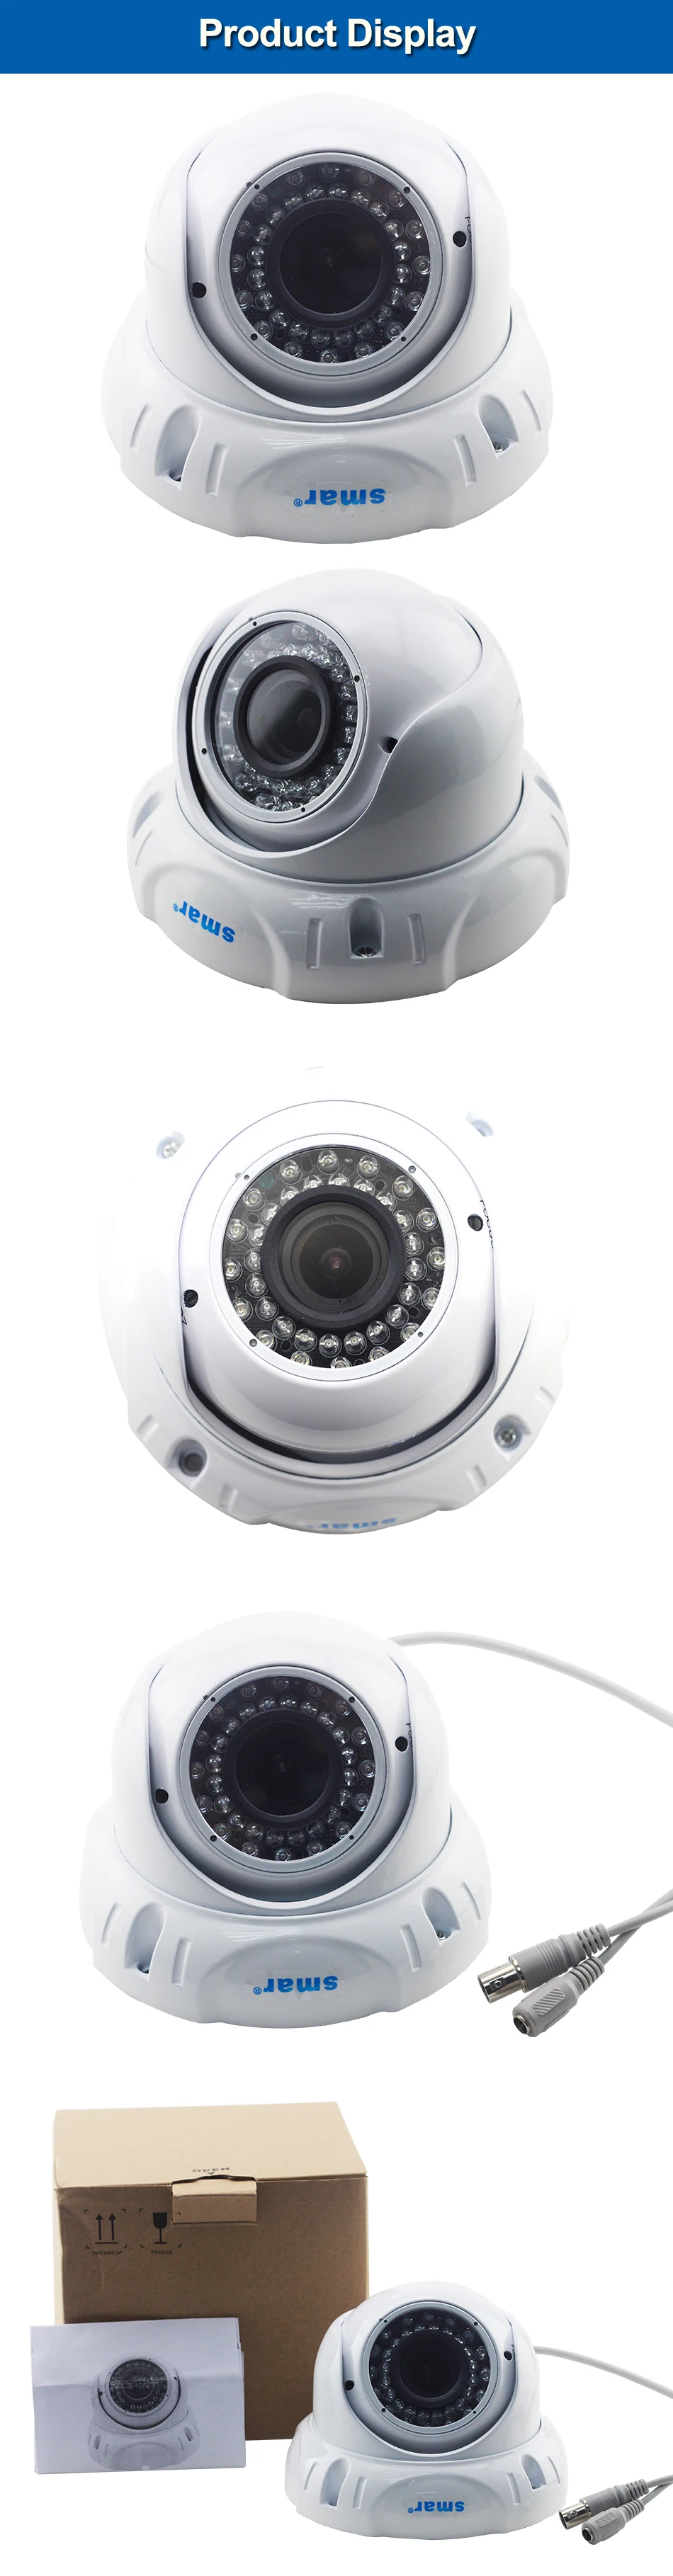 720 P/960 P/1080 P AHD камера 2.0mp 2,8-12 мм зум-объектив Антивандальная наружная купольная камера видеонаблюдения Bulilt IR-CUT фильтр